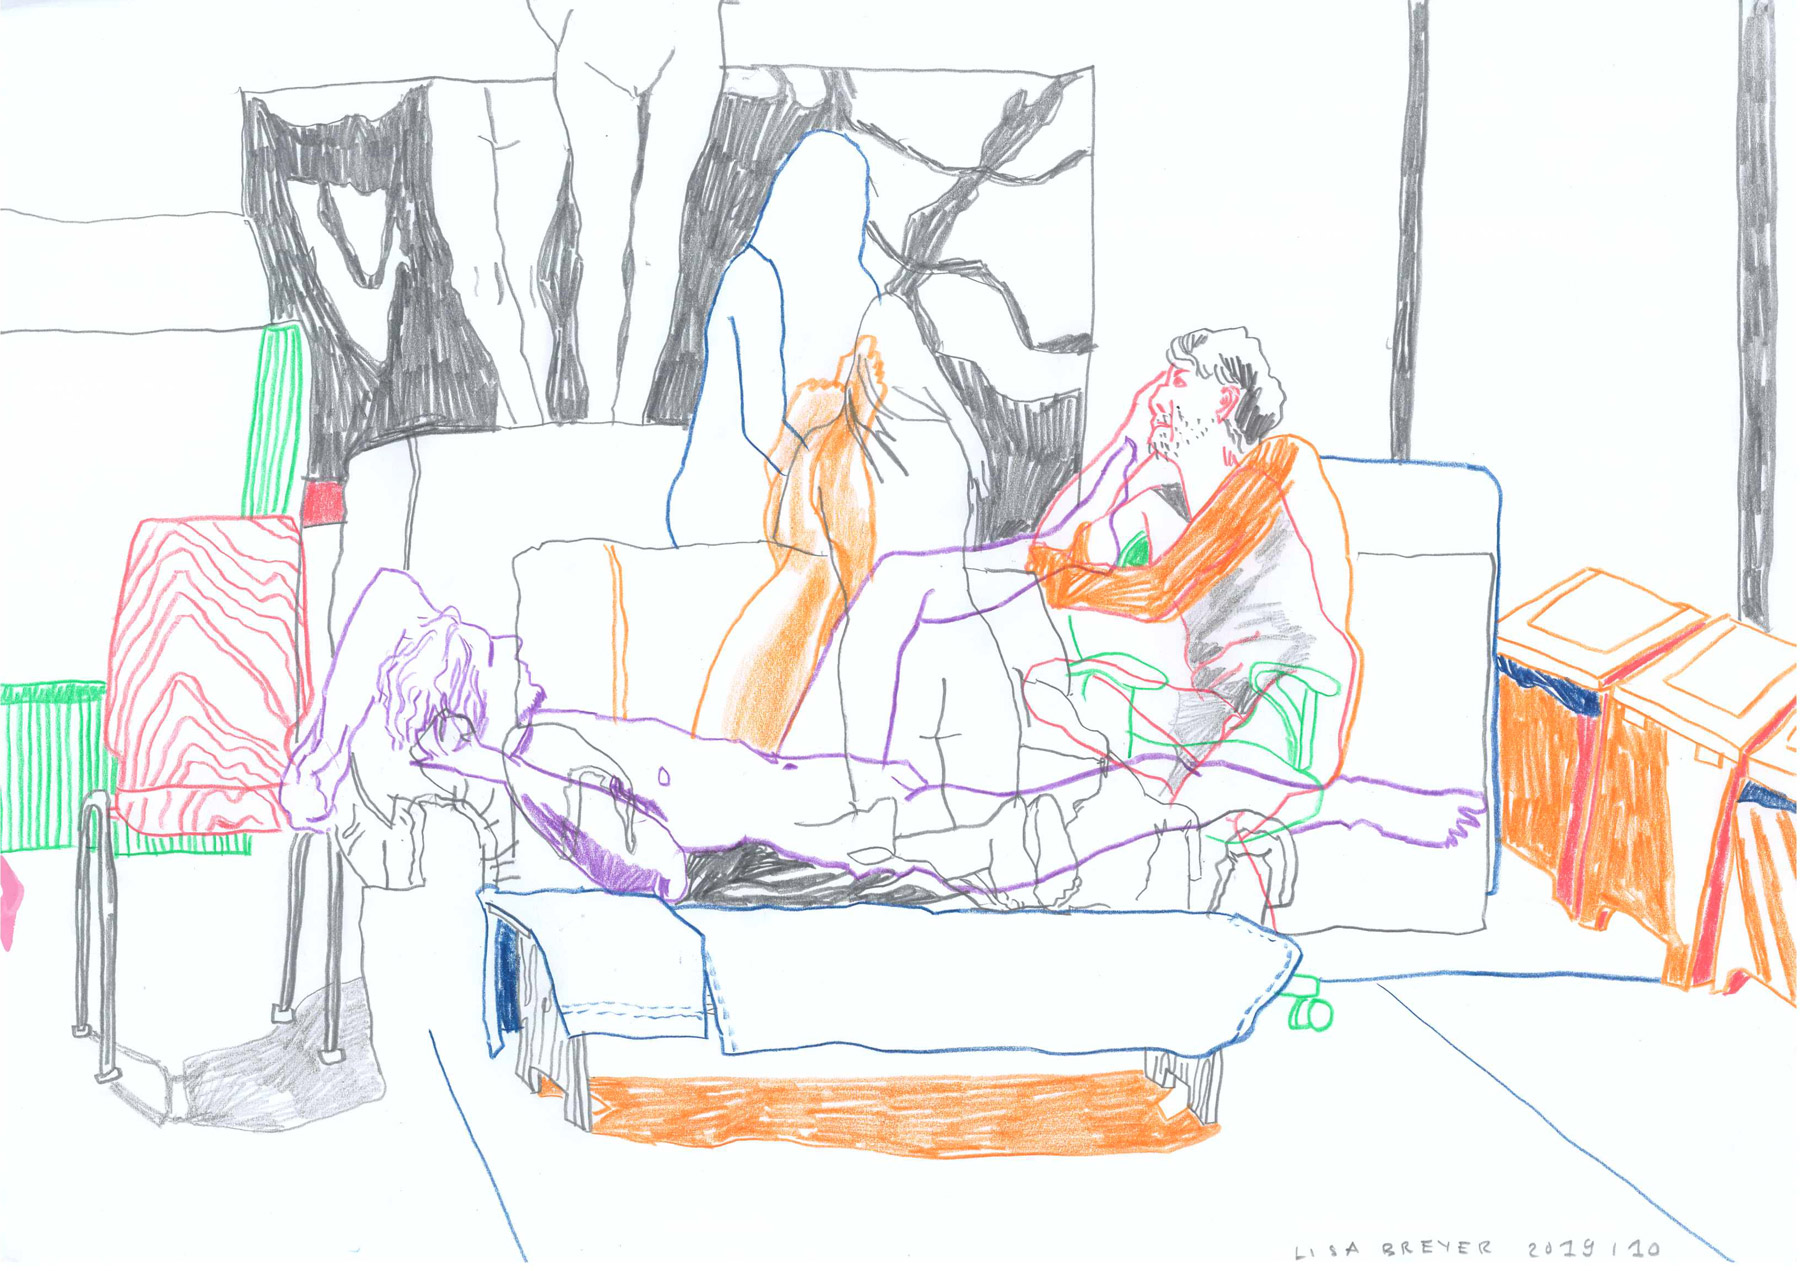 Formation mit Spiegel und Mülleimer, colored pencil on paper, 42 x 29 cm, 2019 Lisa Breyer